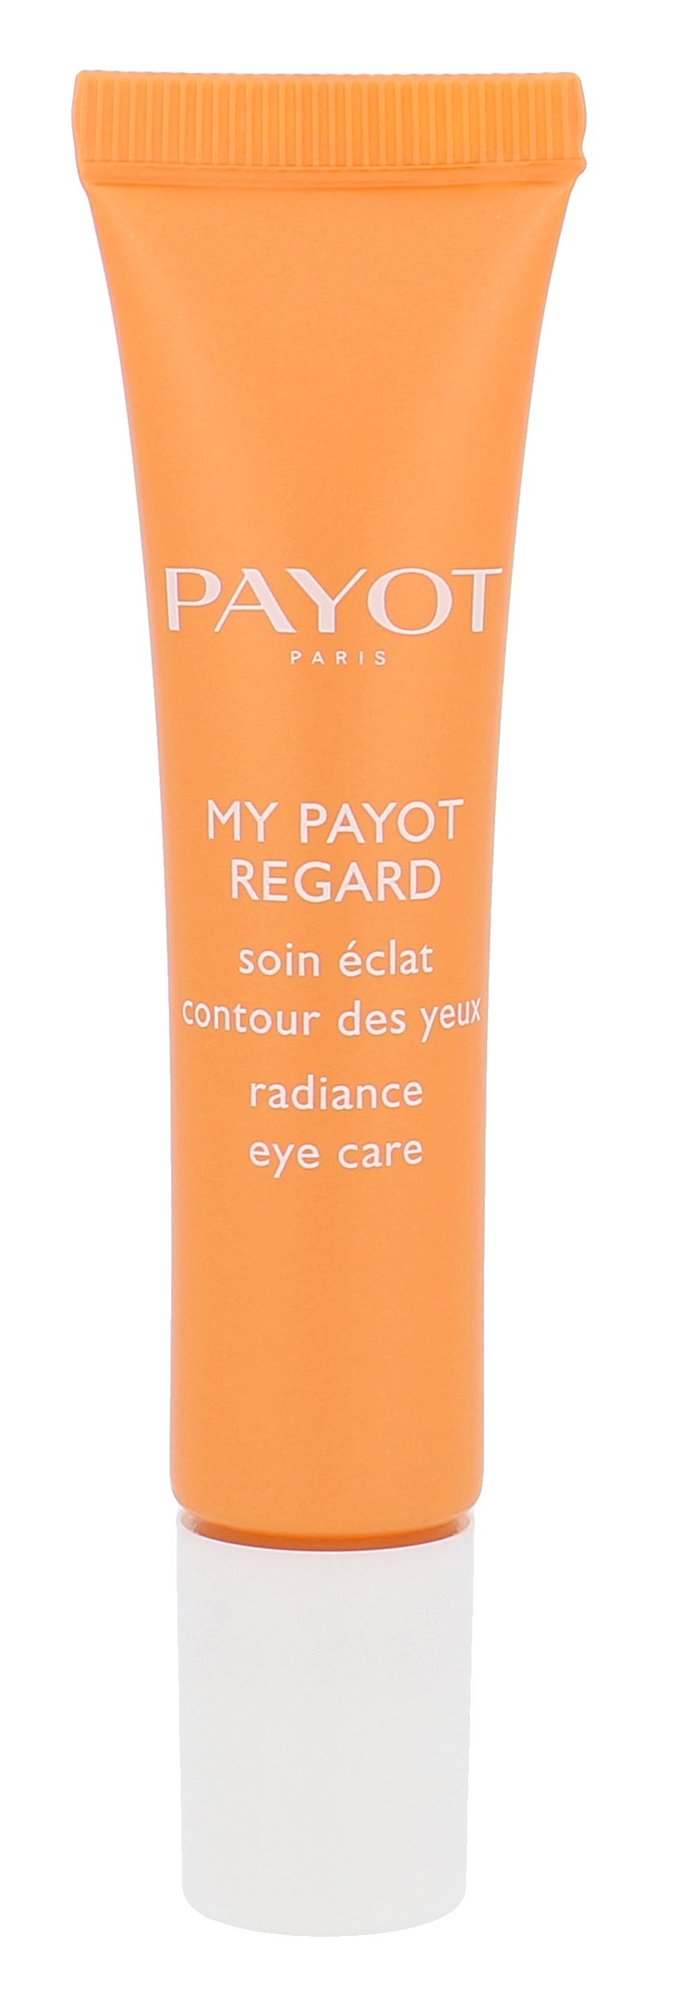 Payot My Payot Regard Eye Care